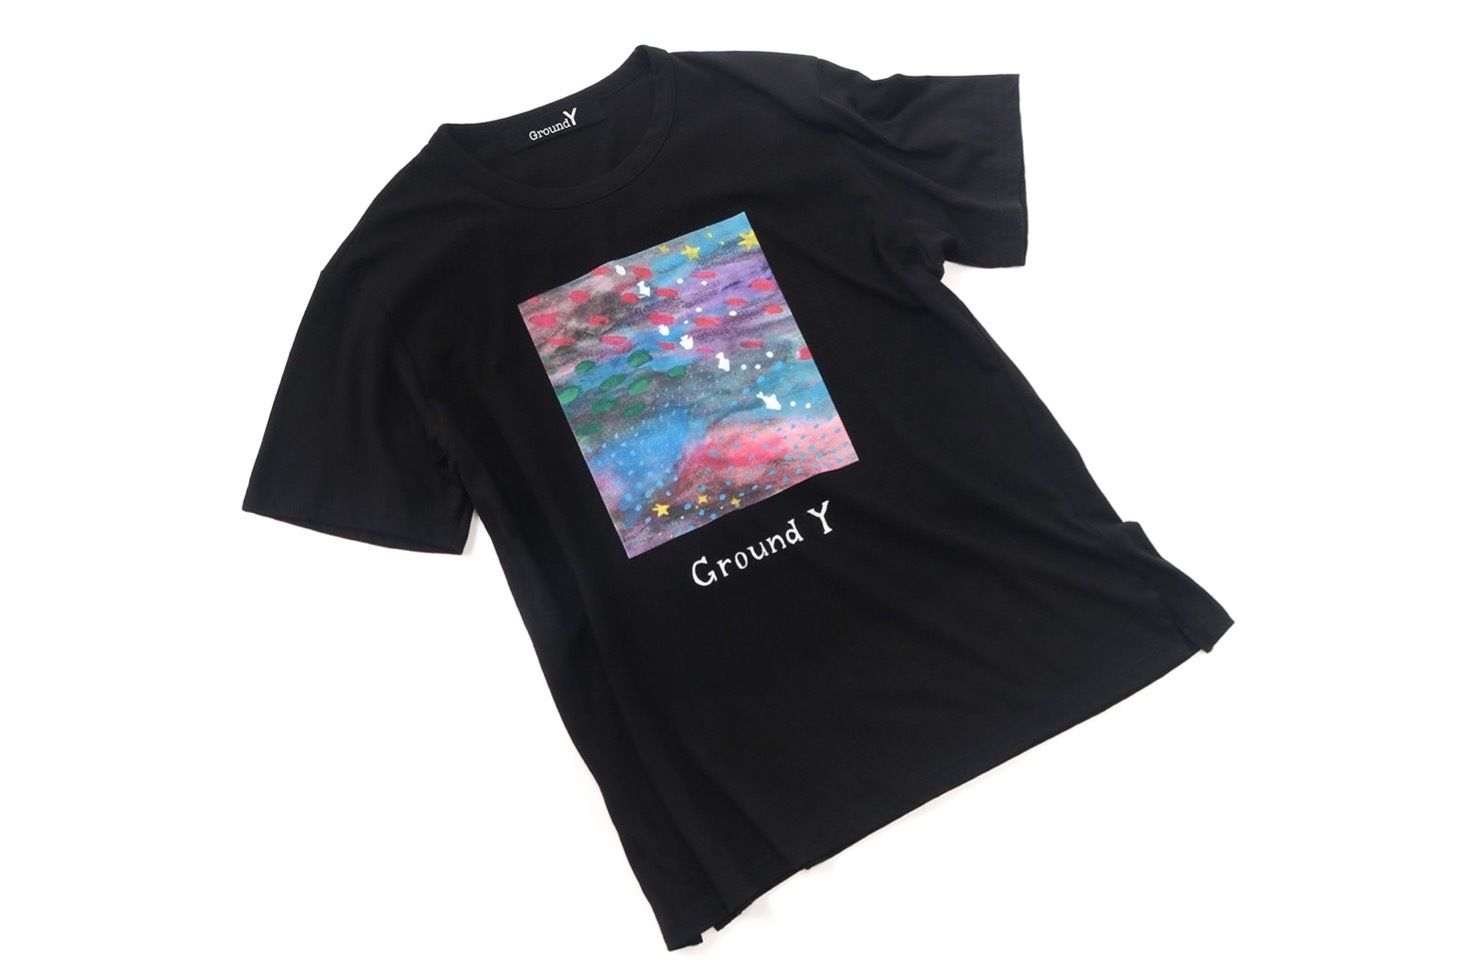 Ground Y“夢の中”などのイラストを施したTシャツ、深川麻衣の描き